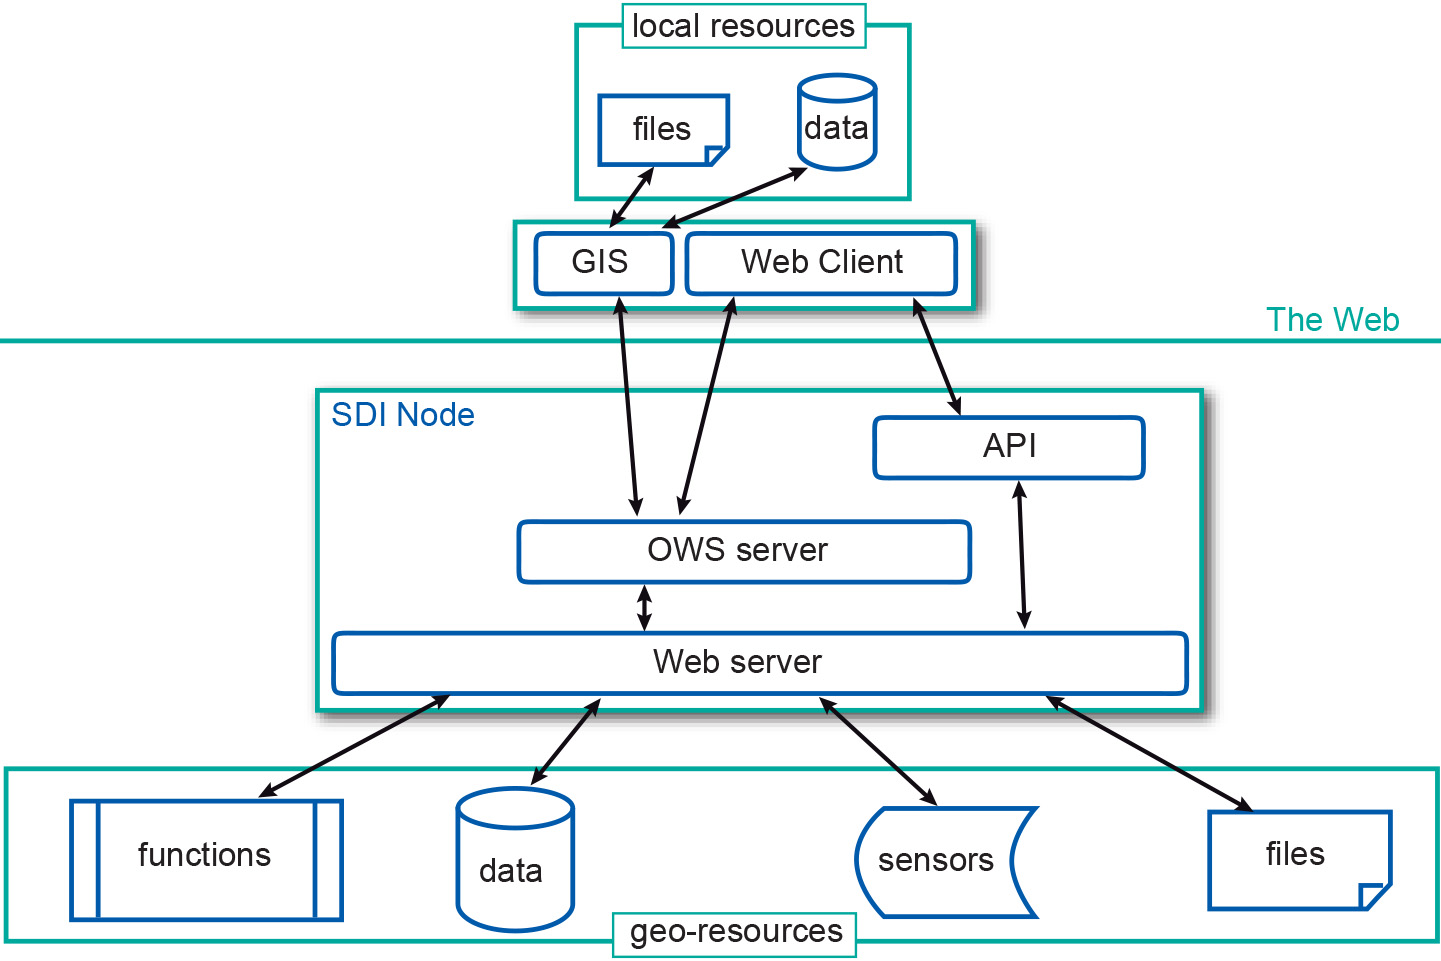 Figure 1: SDI node architecture and communication patterns